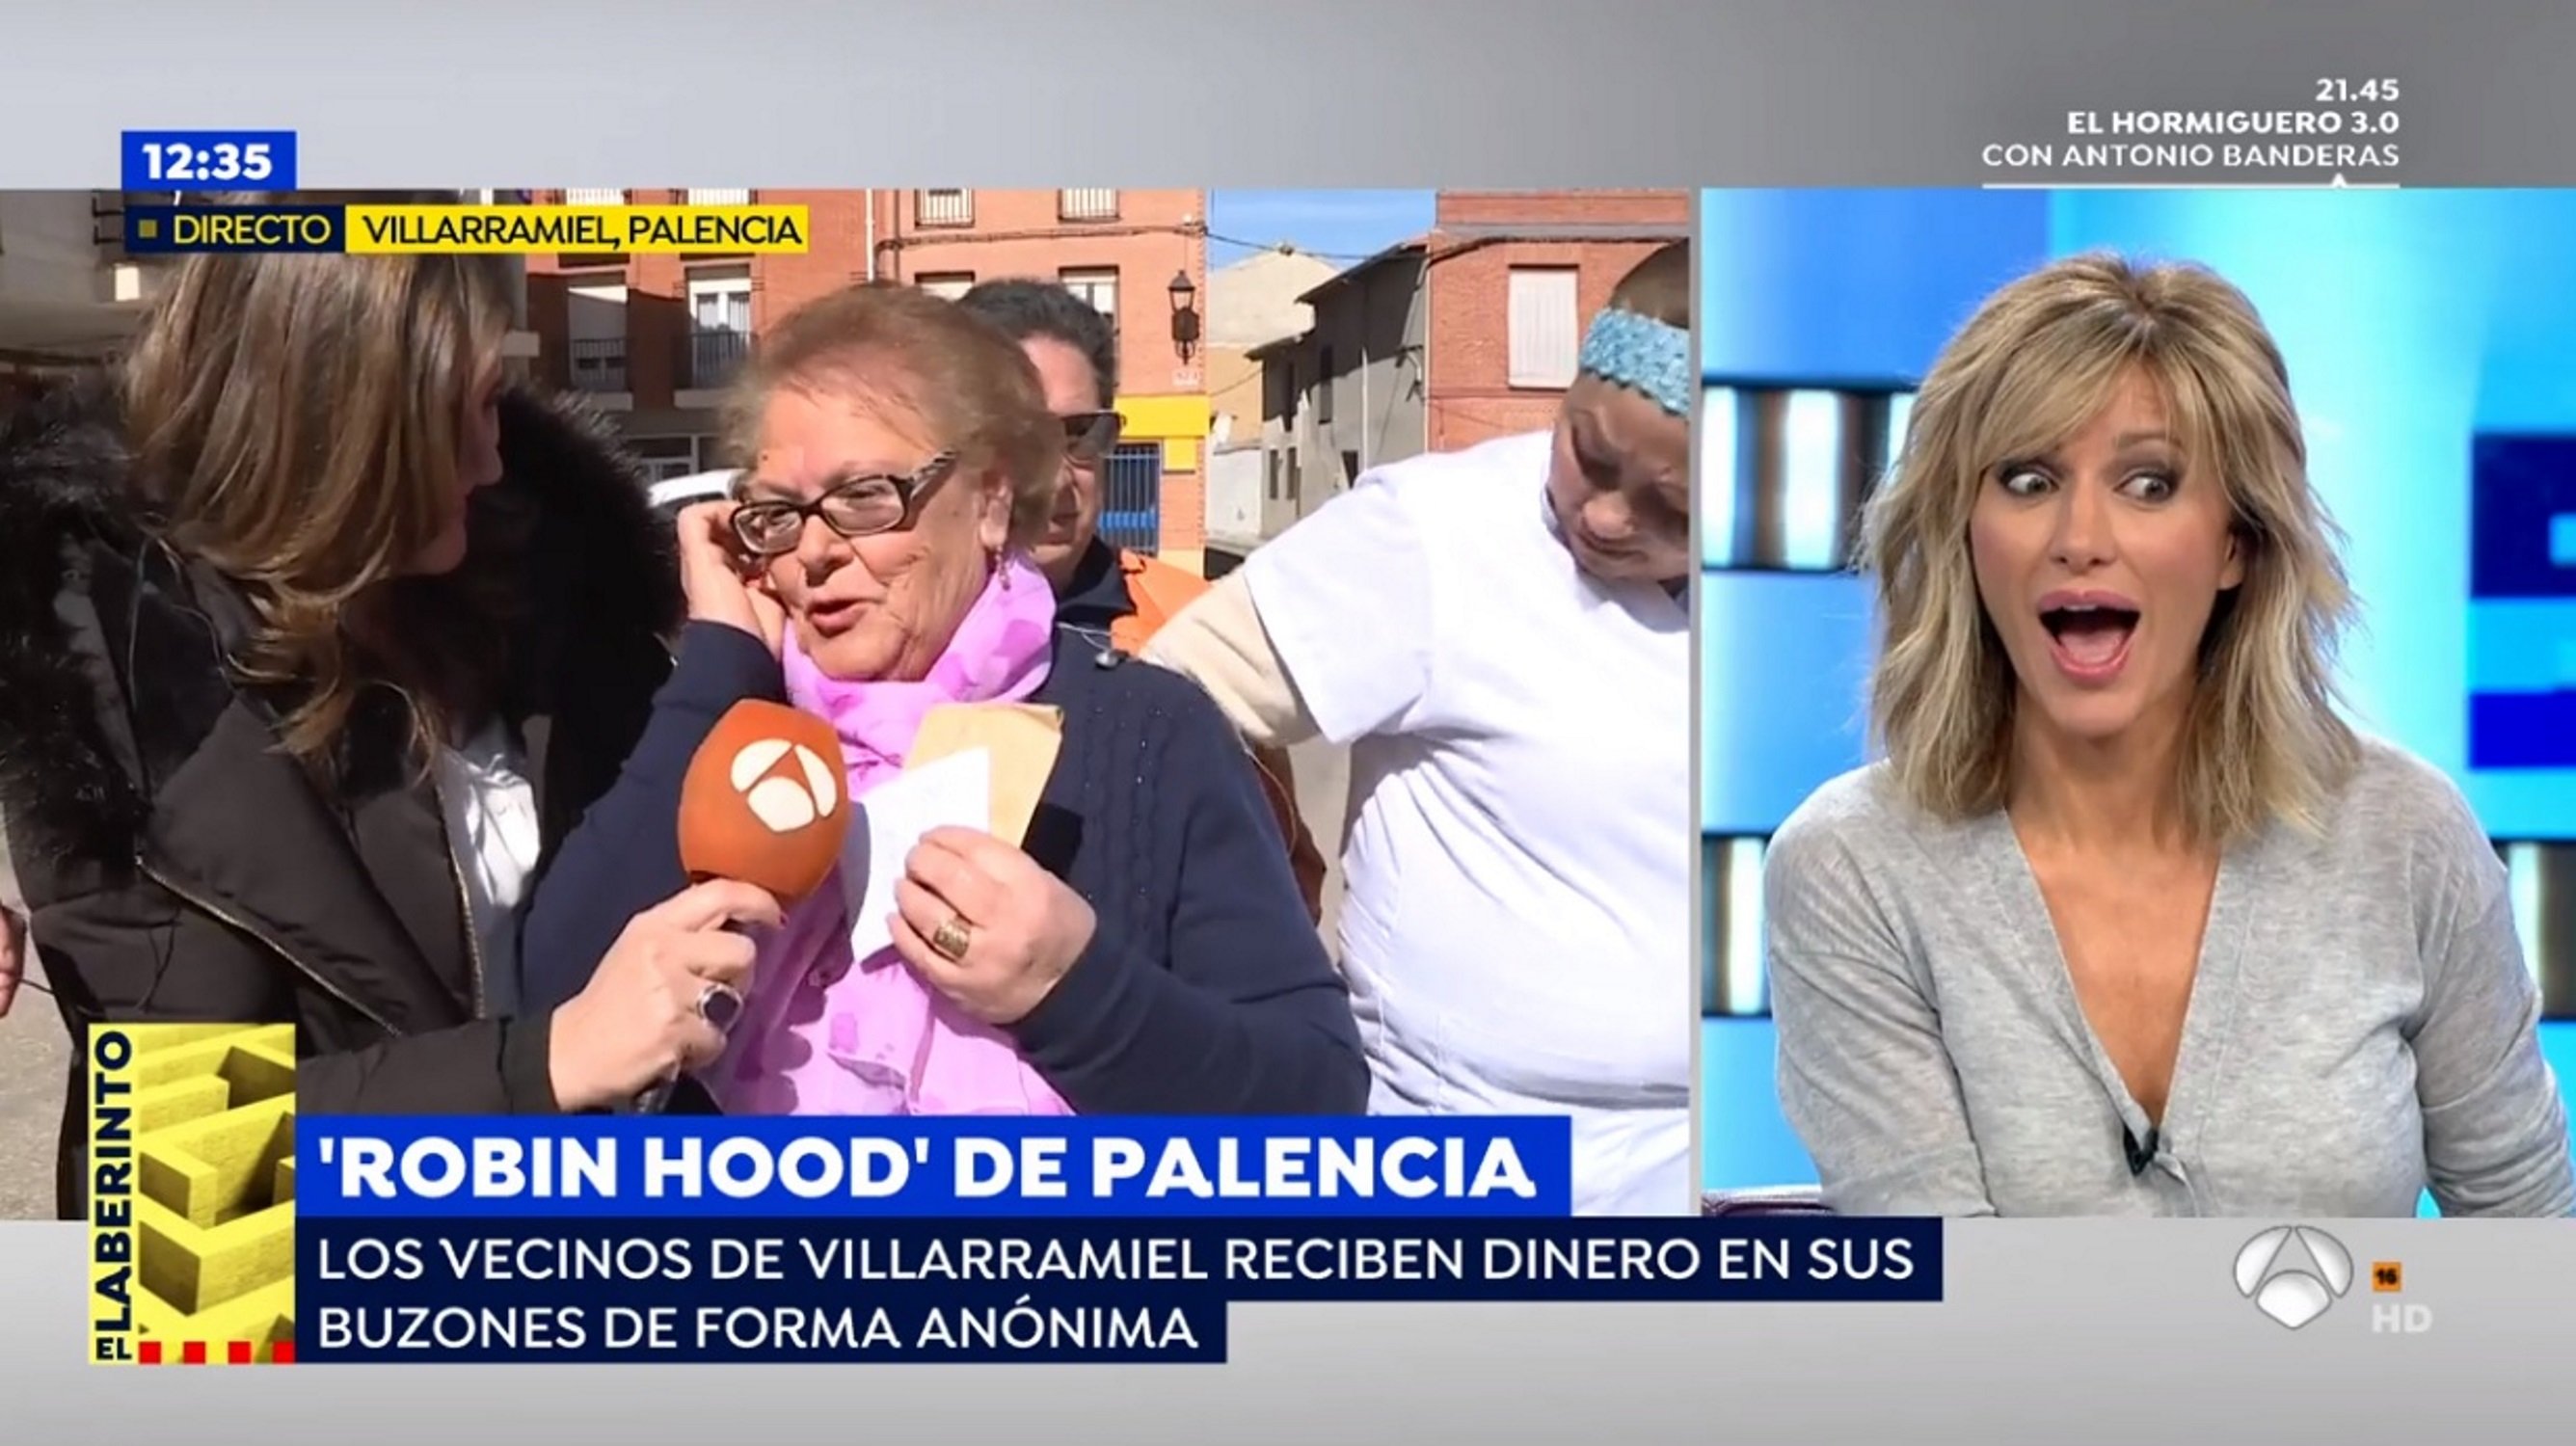 El "Robin Hood de Palencia" regala dinero y en Antena 3 señalan a Pedro Sánchez